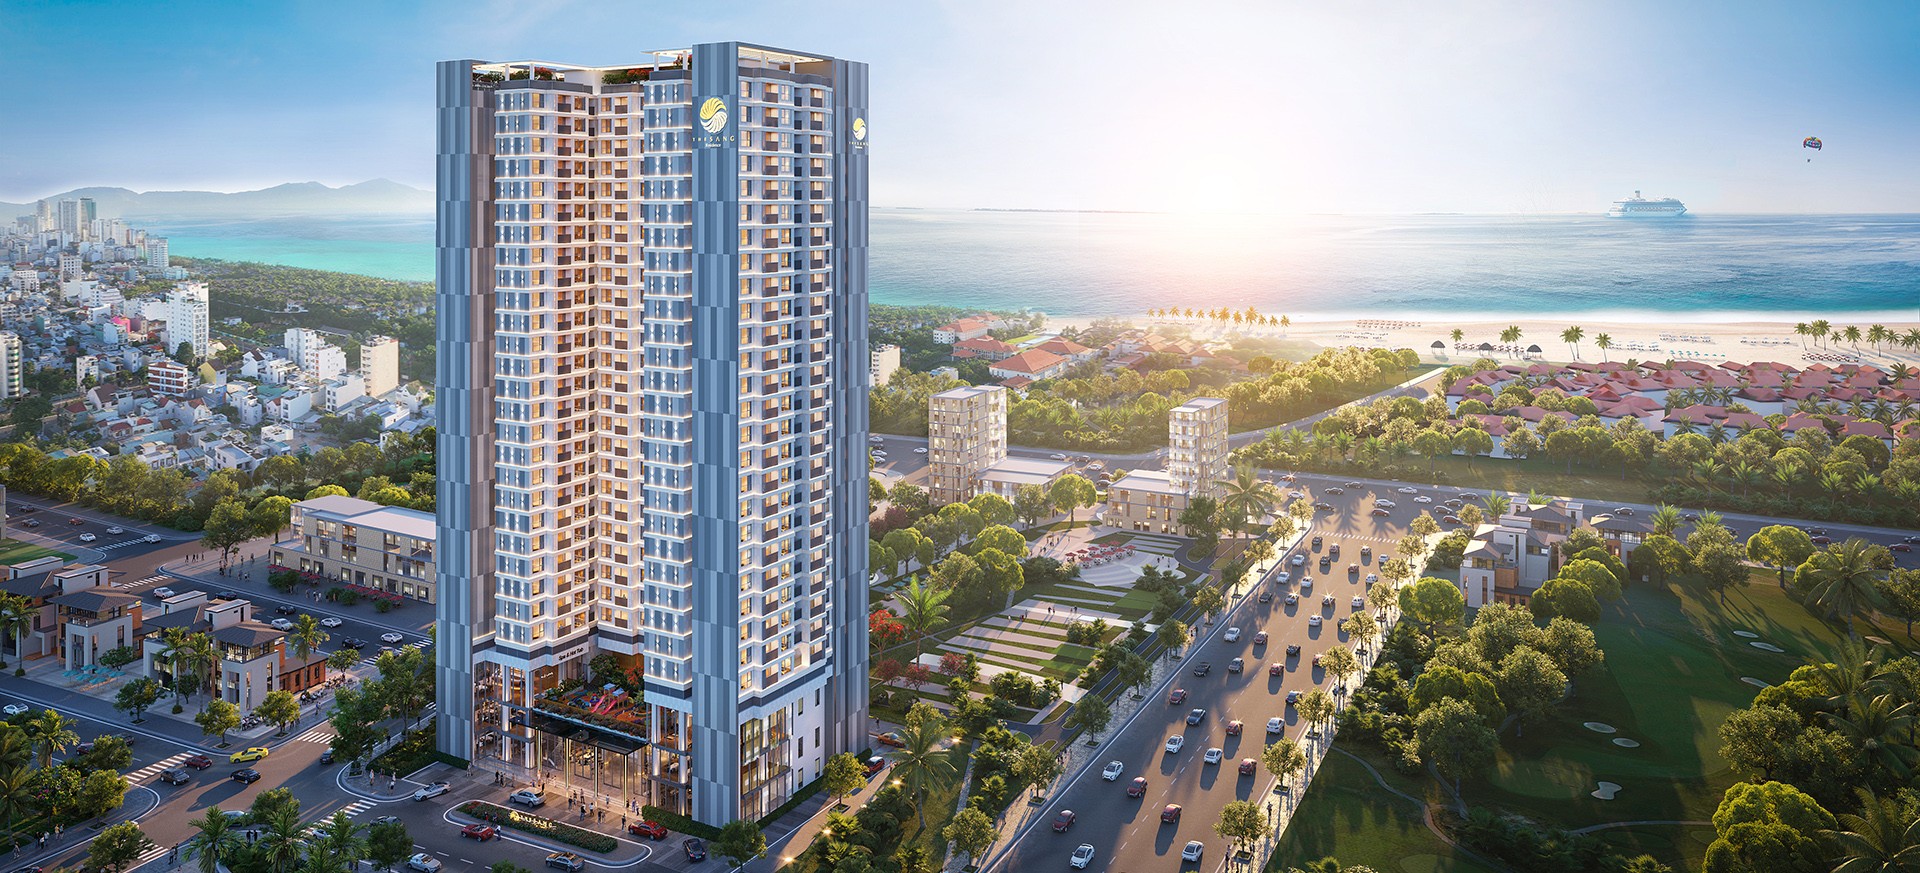 Bốn bước xác định chủ đầu tư bất động sản uy tín - Viet Nam Smart City